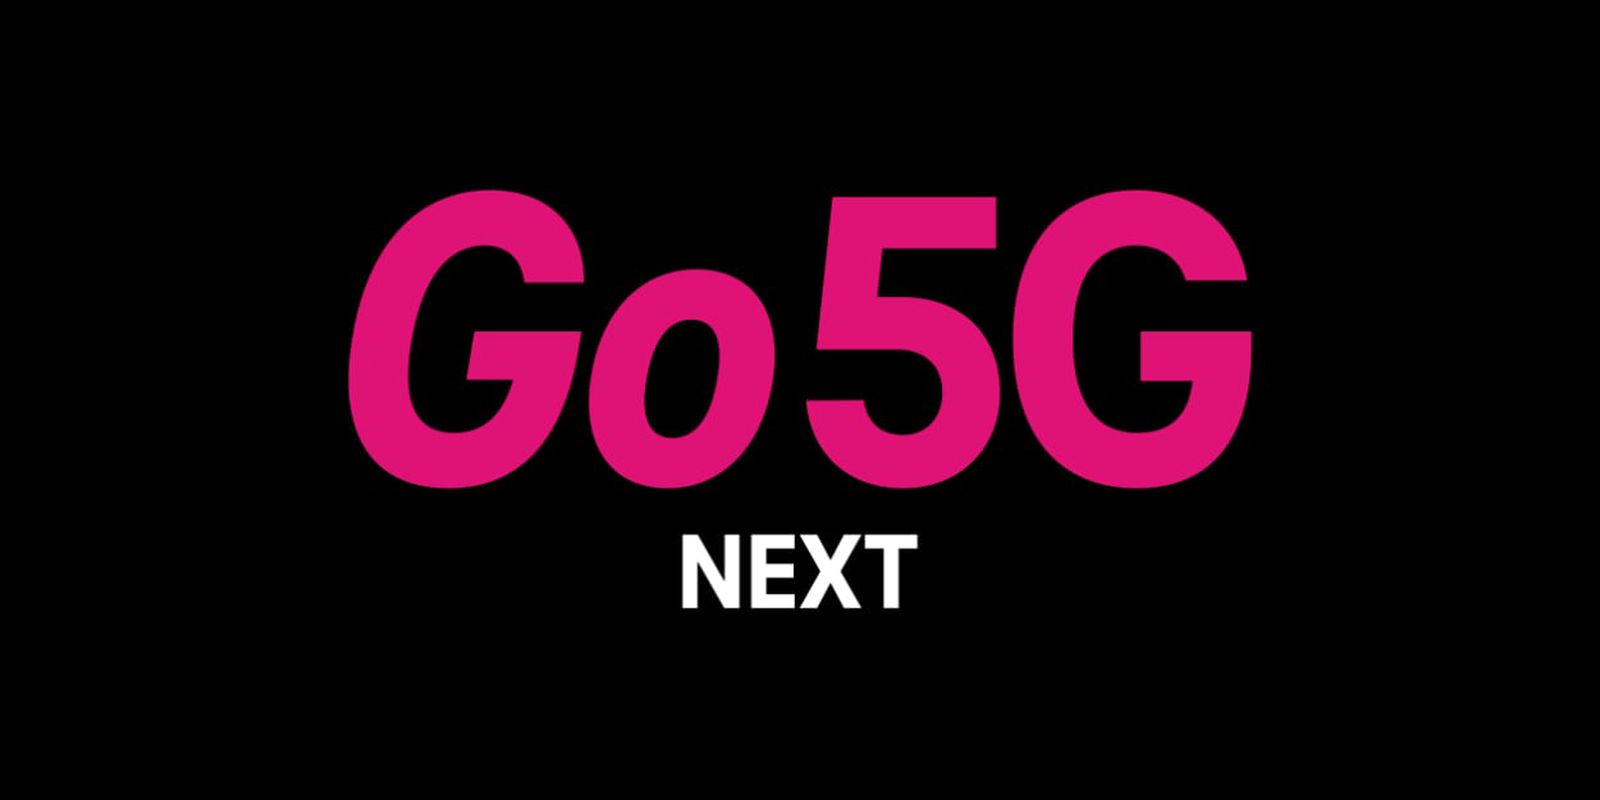 Il piano Go5G Next di T-Mobile consente ai clienti di aggiornare gli smartphone ogni anno